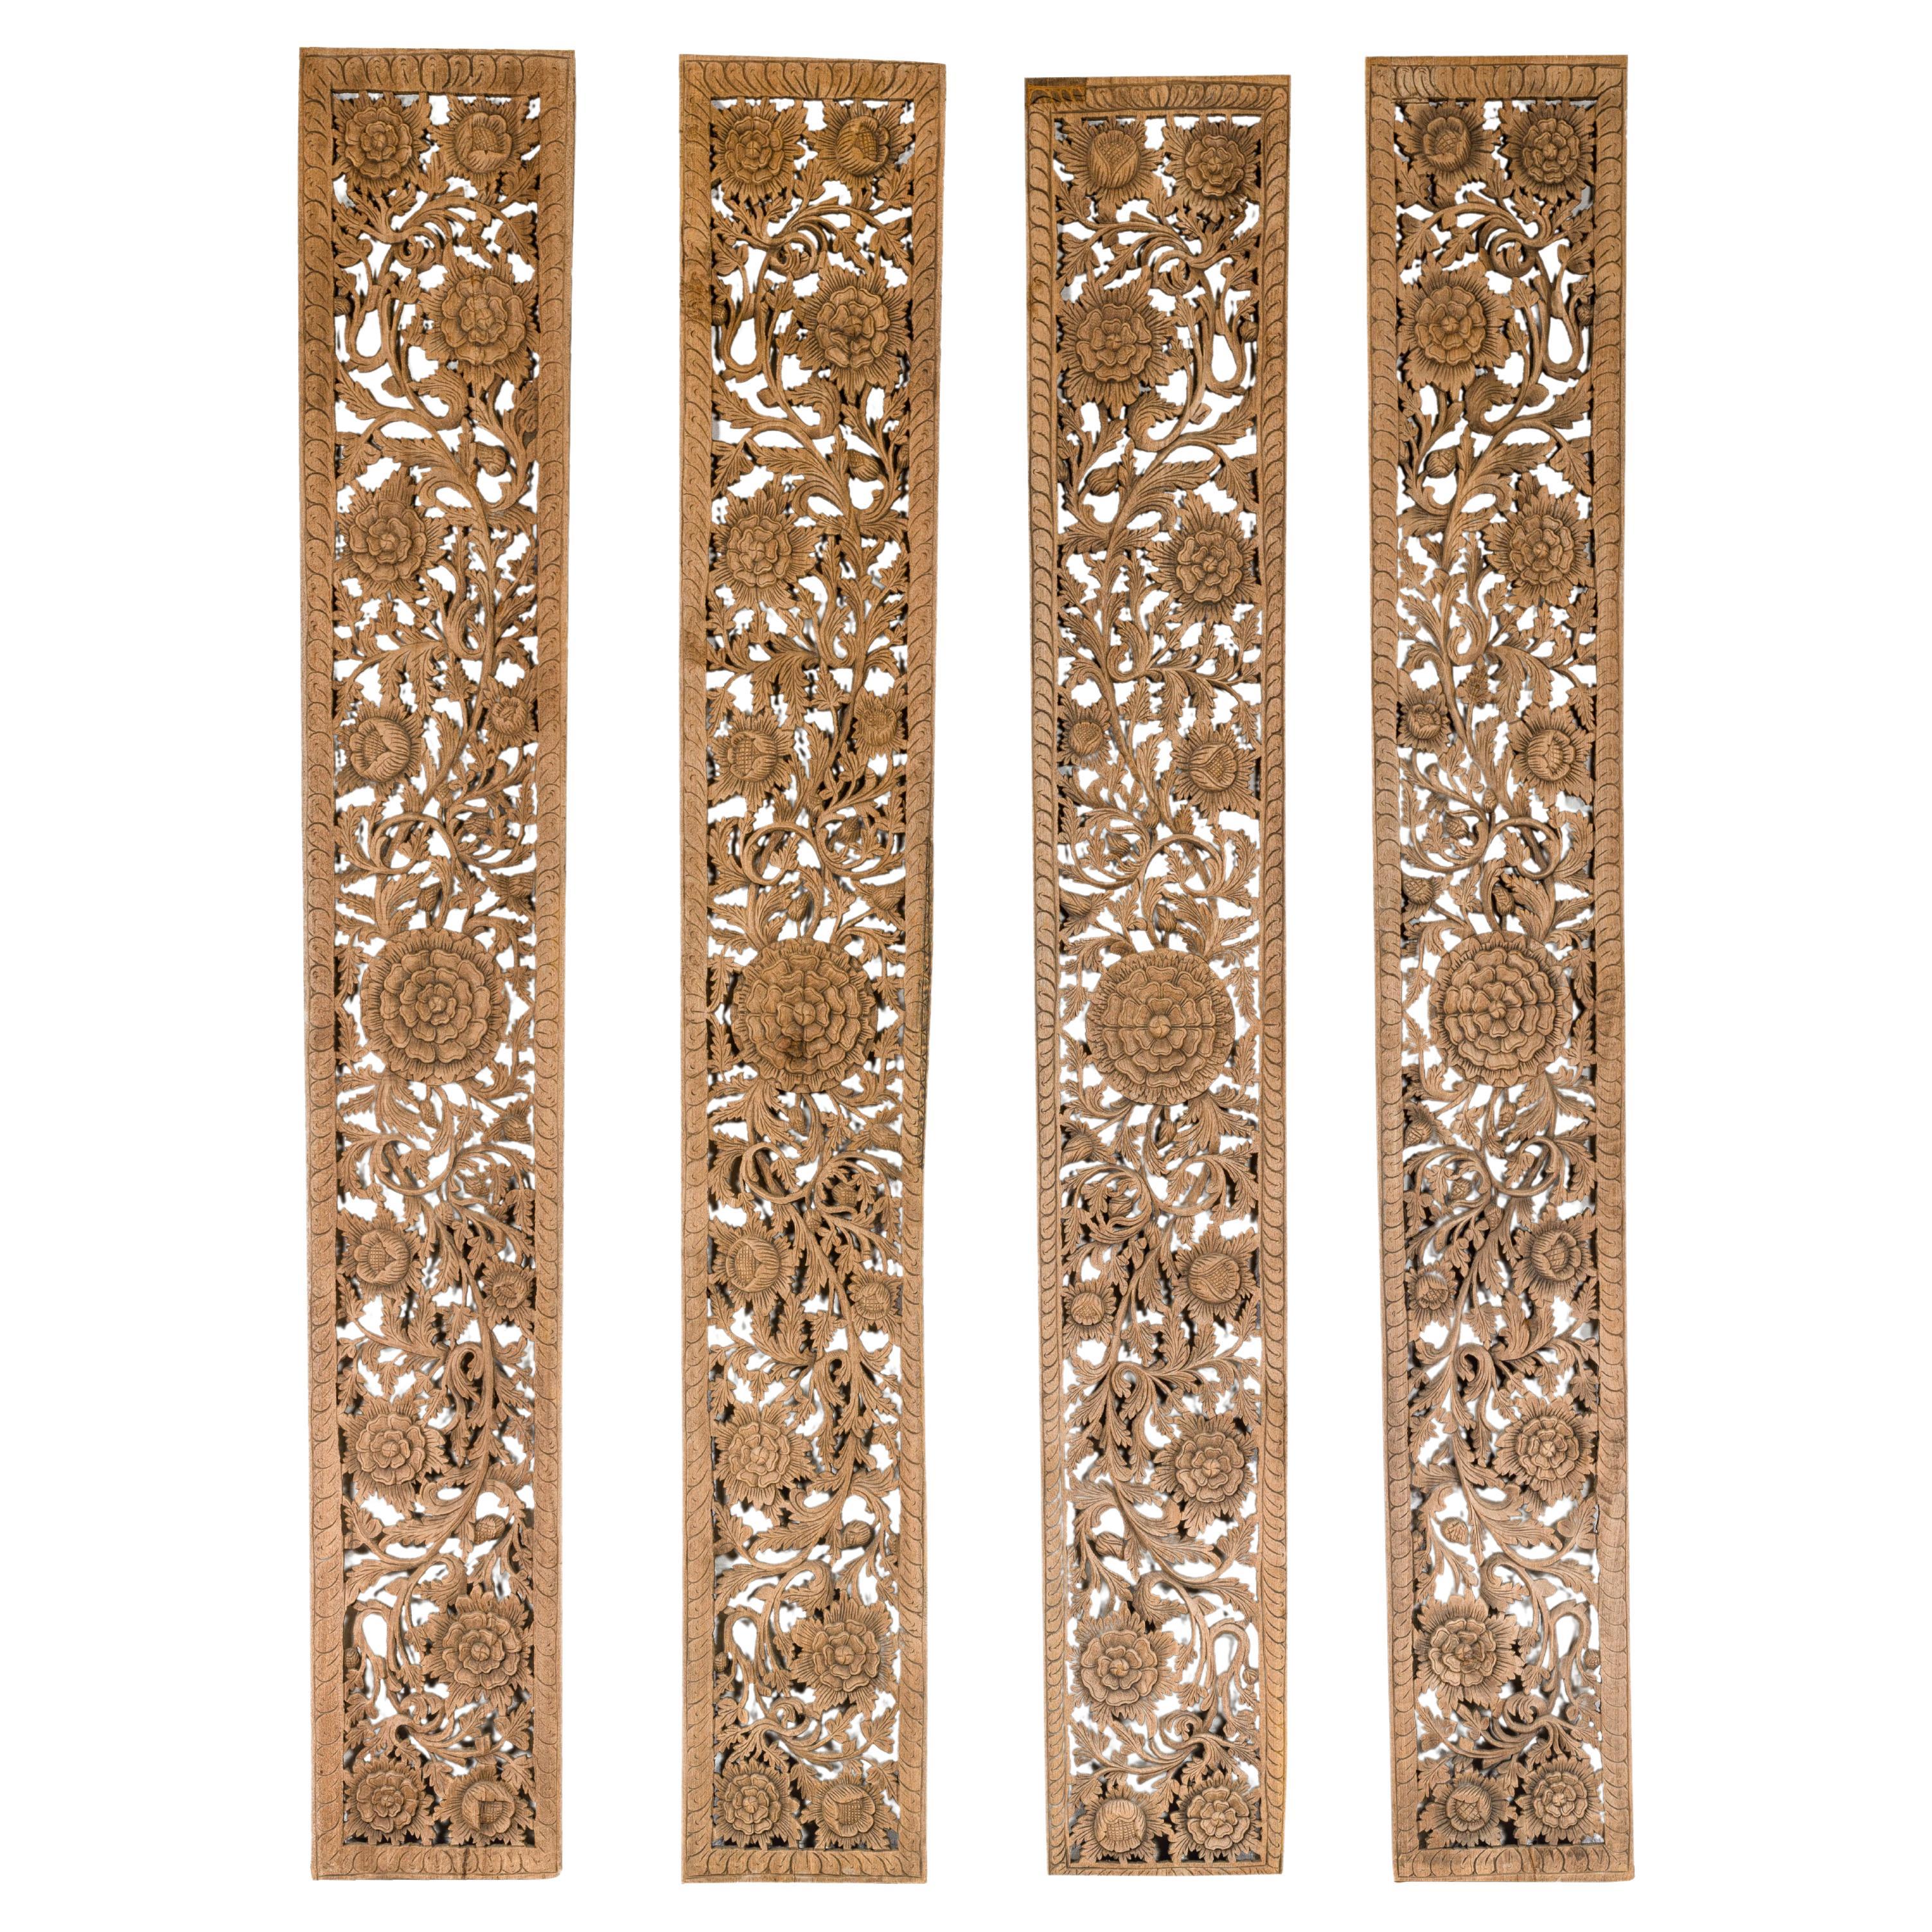 Ensemble de quatre panneaux architecturaux avec des motifs floraux sculptés à la main